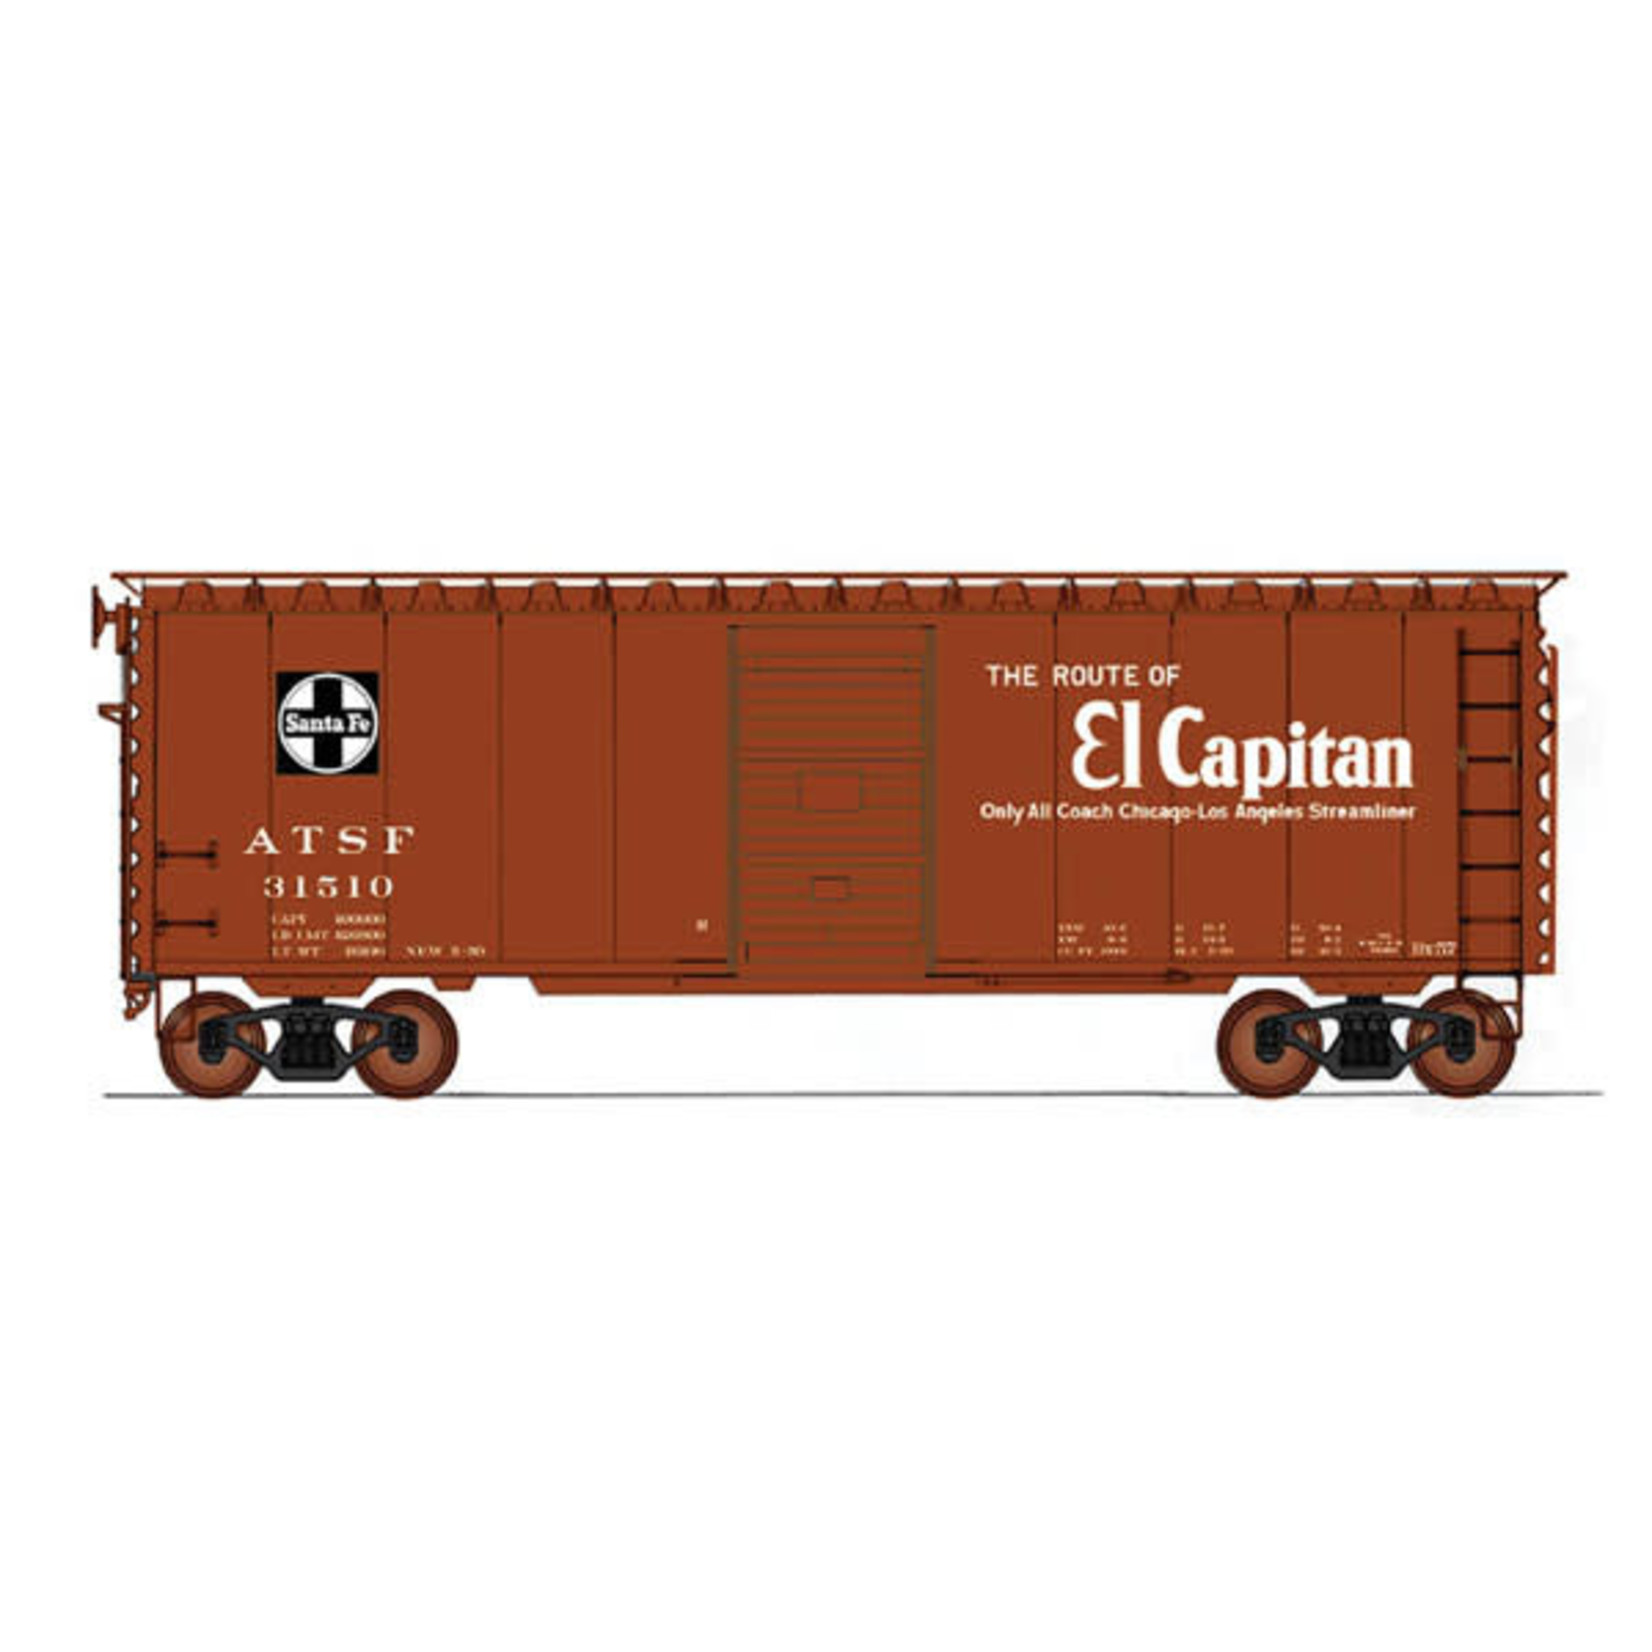 InterMountain Railway CO HO 40' PS-1 Box ATSF Bx57-El Captain